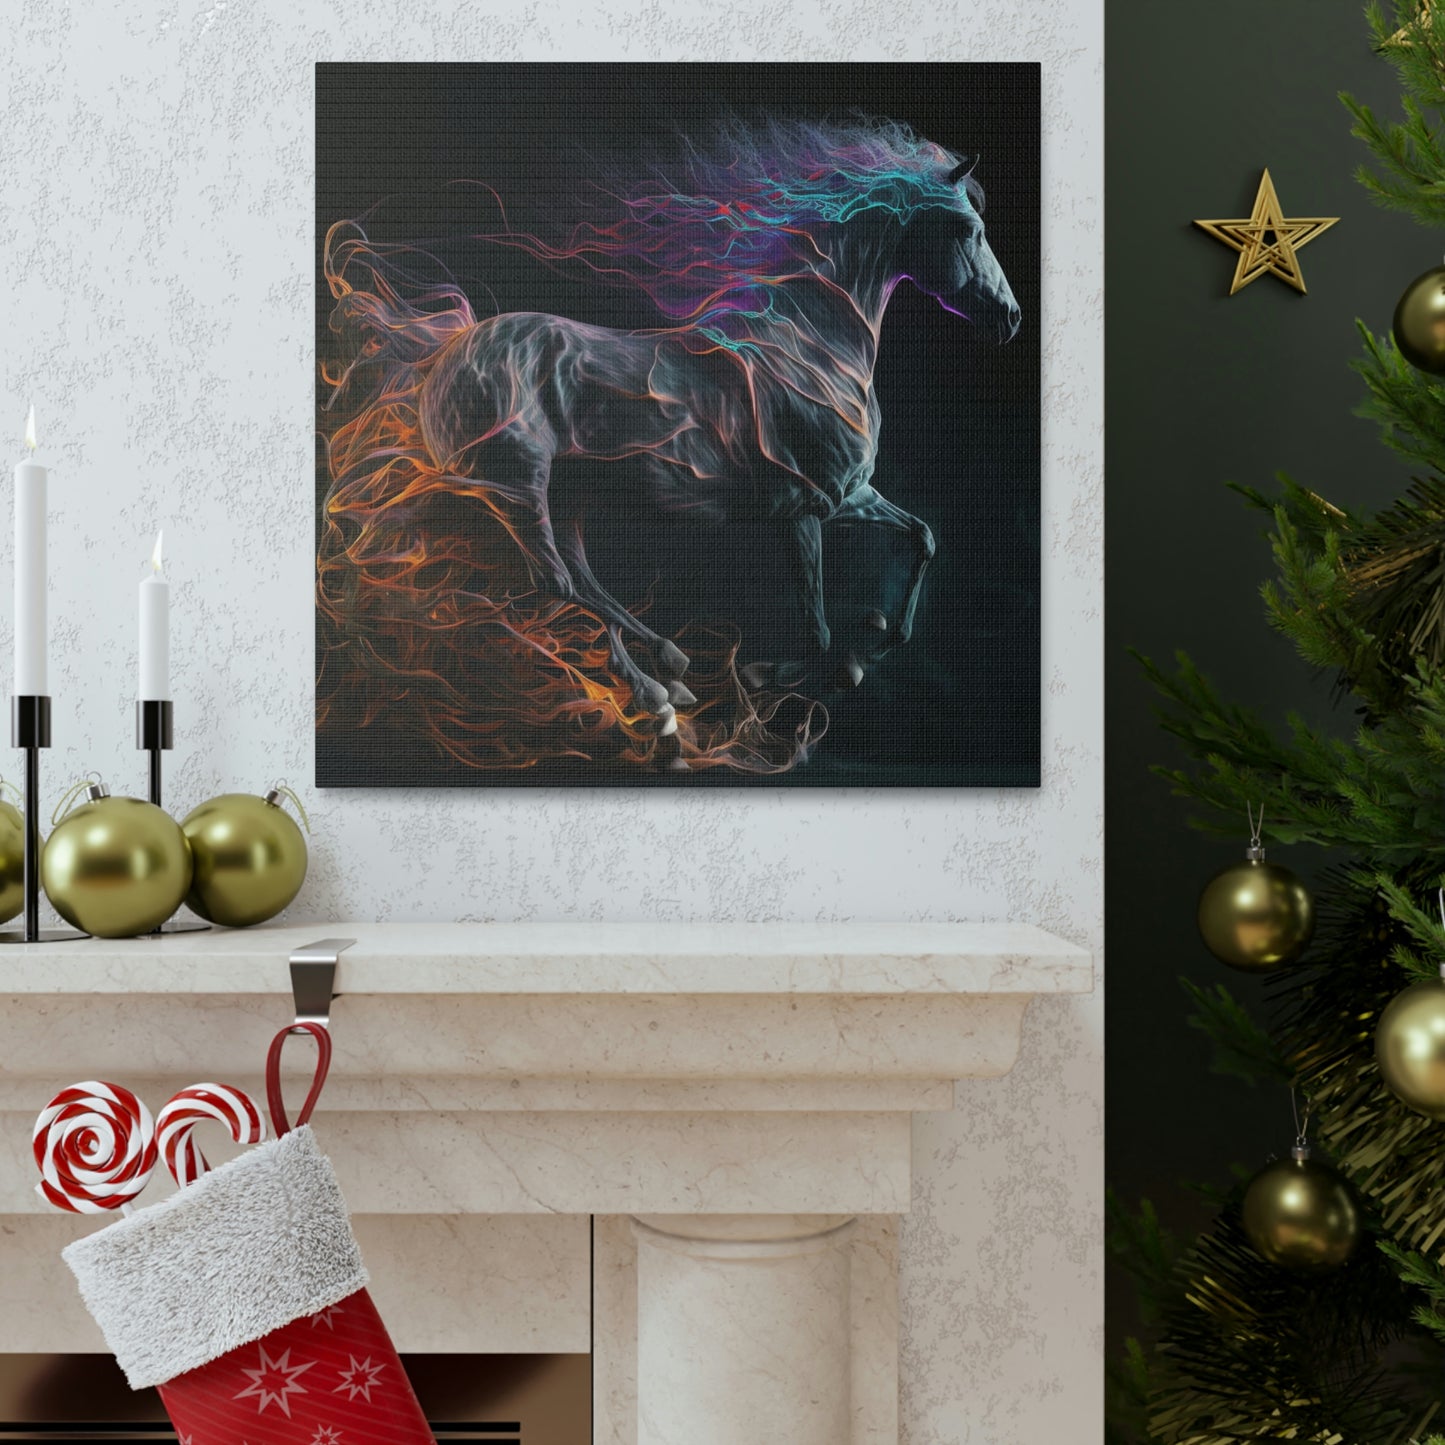 Canvas Gallery Wraps Florescent Horses Mane1